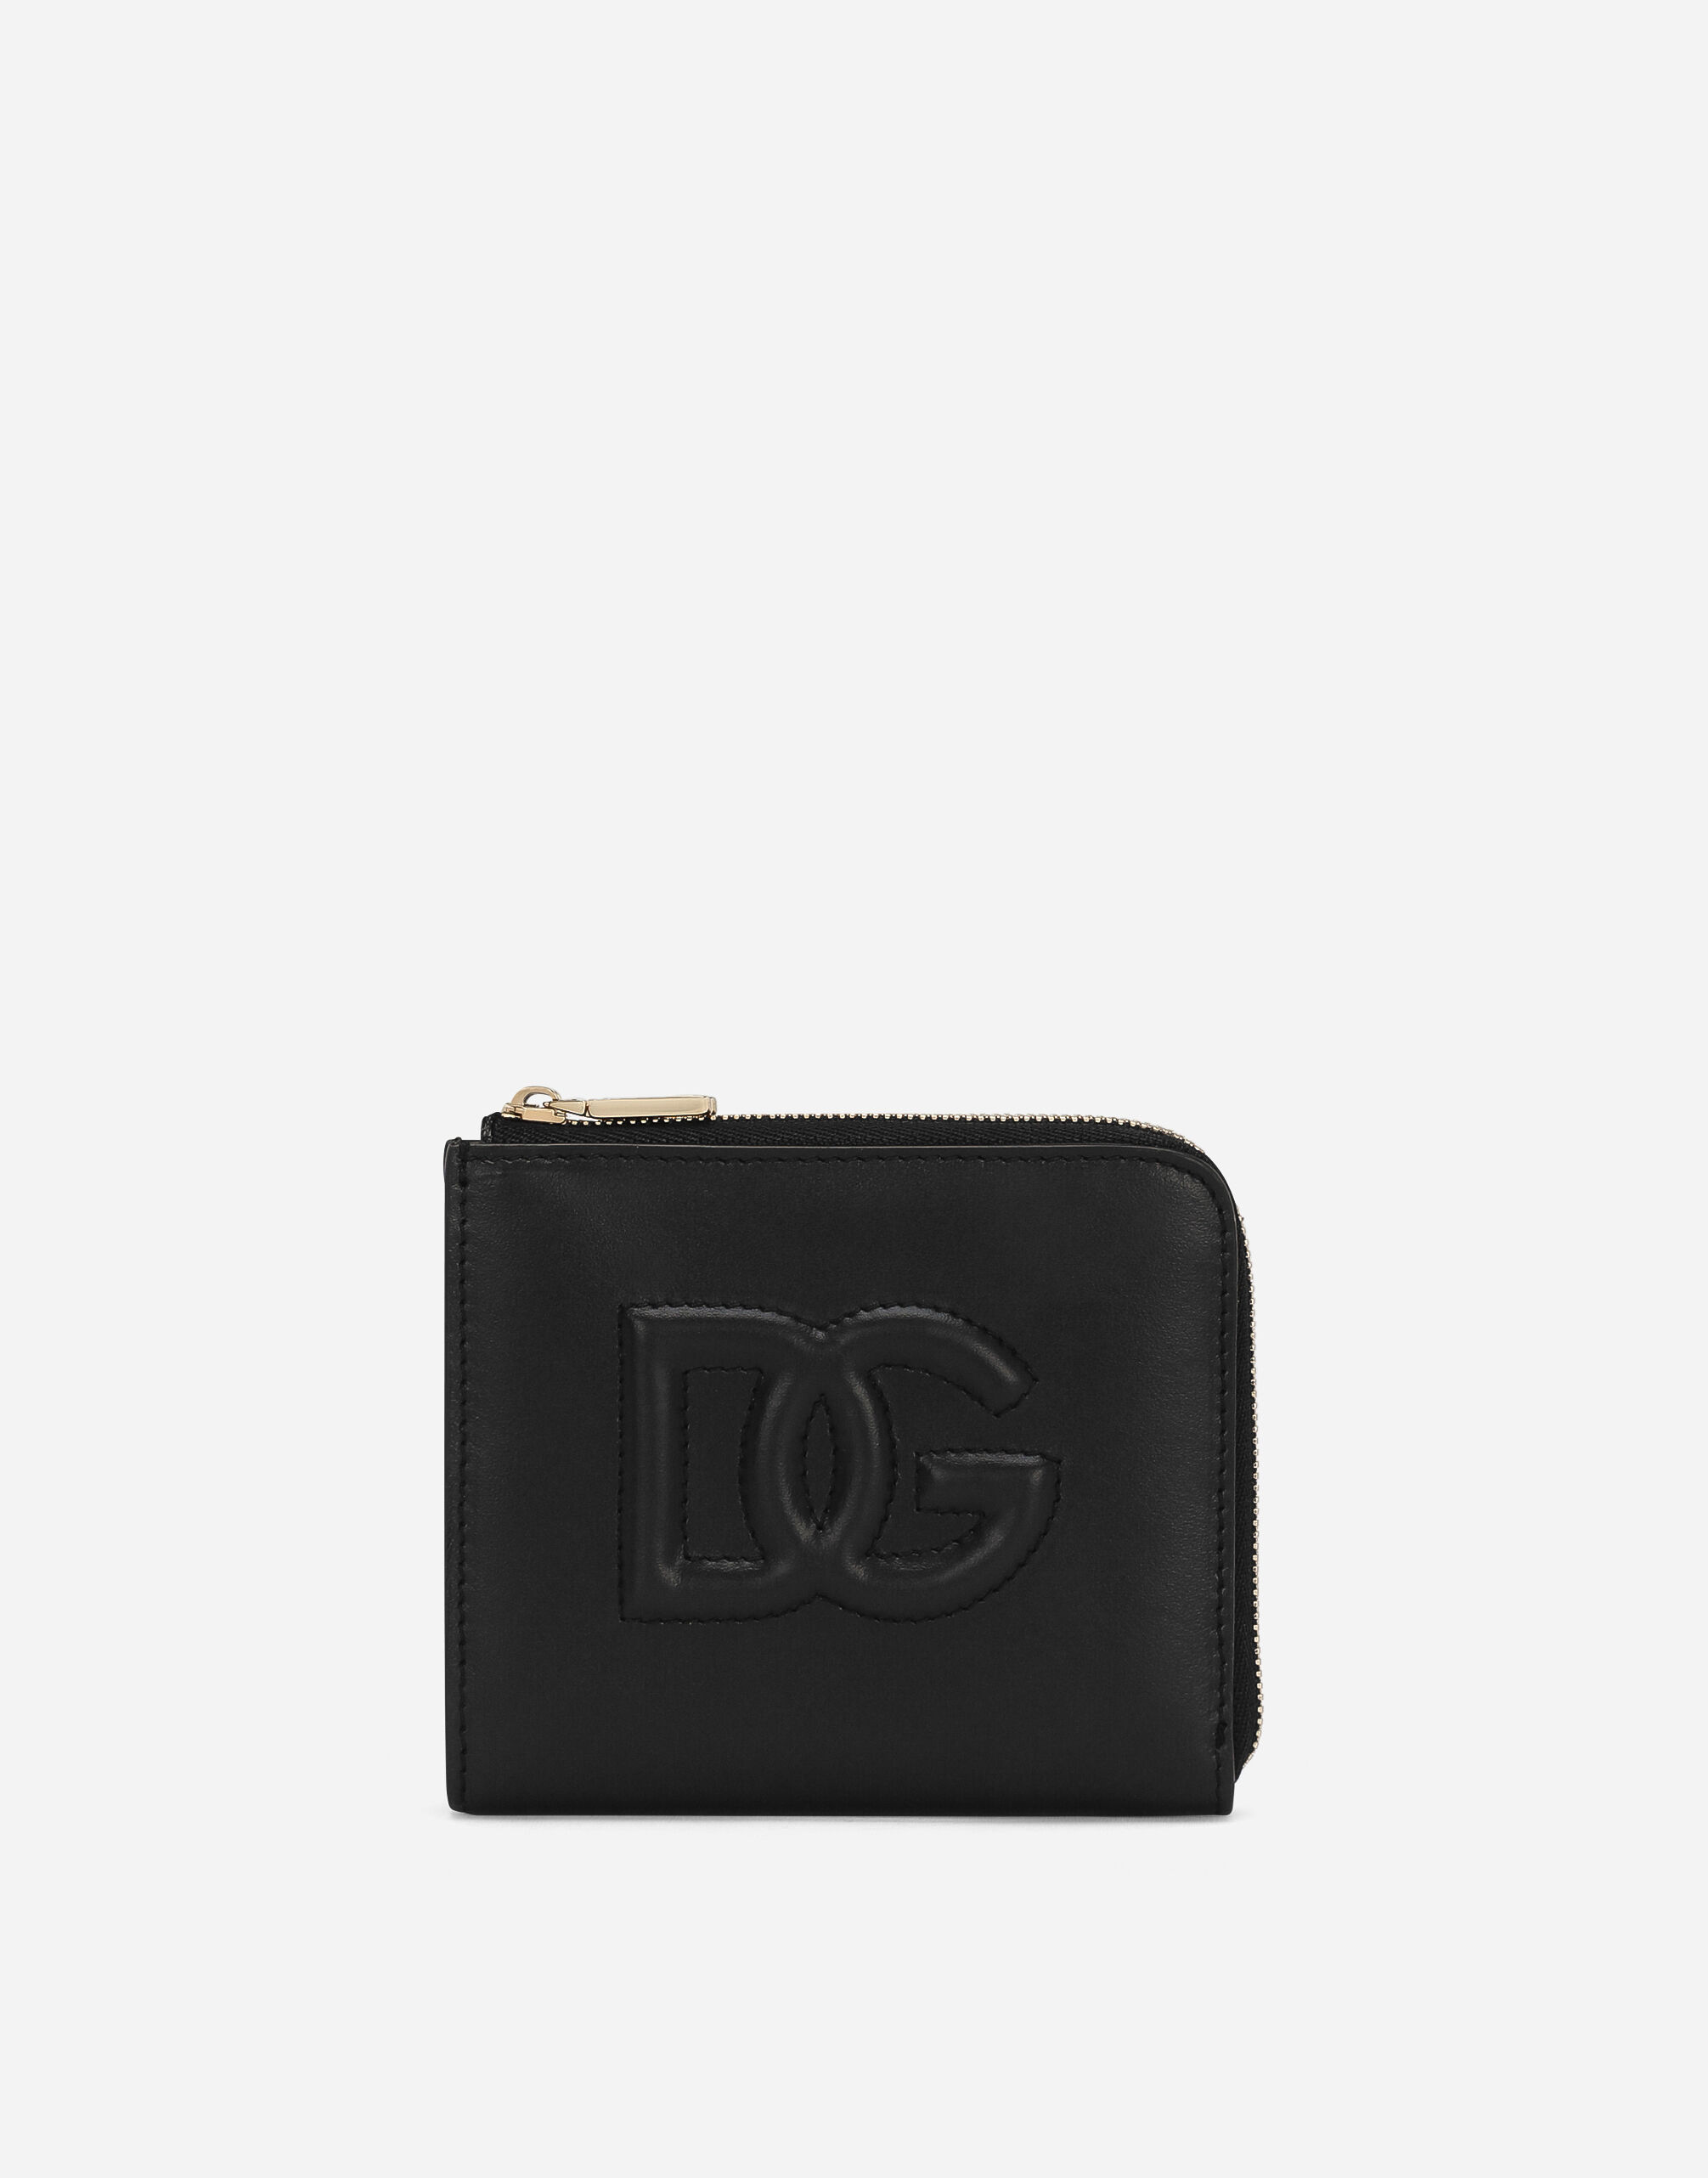 Dolce & Gabbana DG Logo card holder Black VG443FVP187